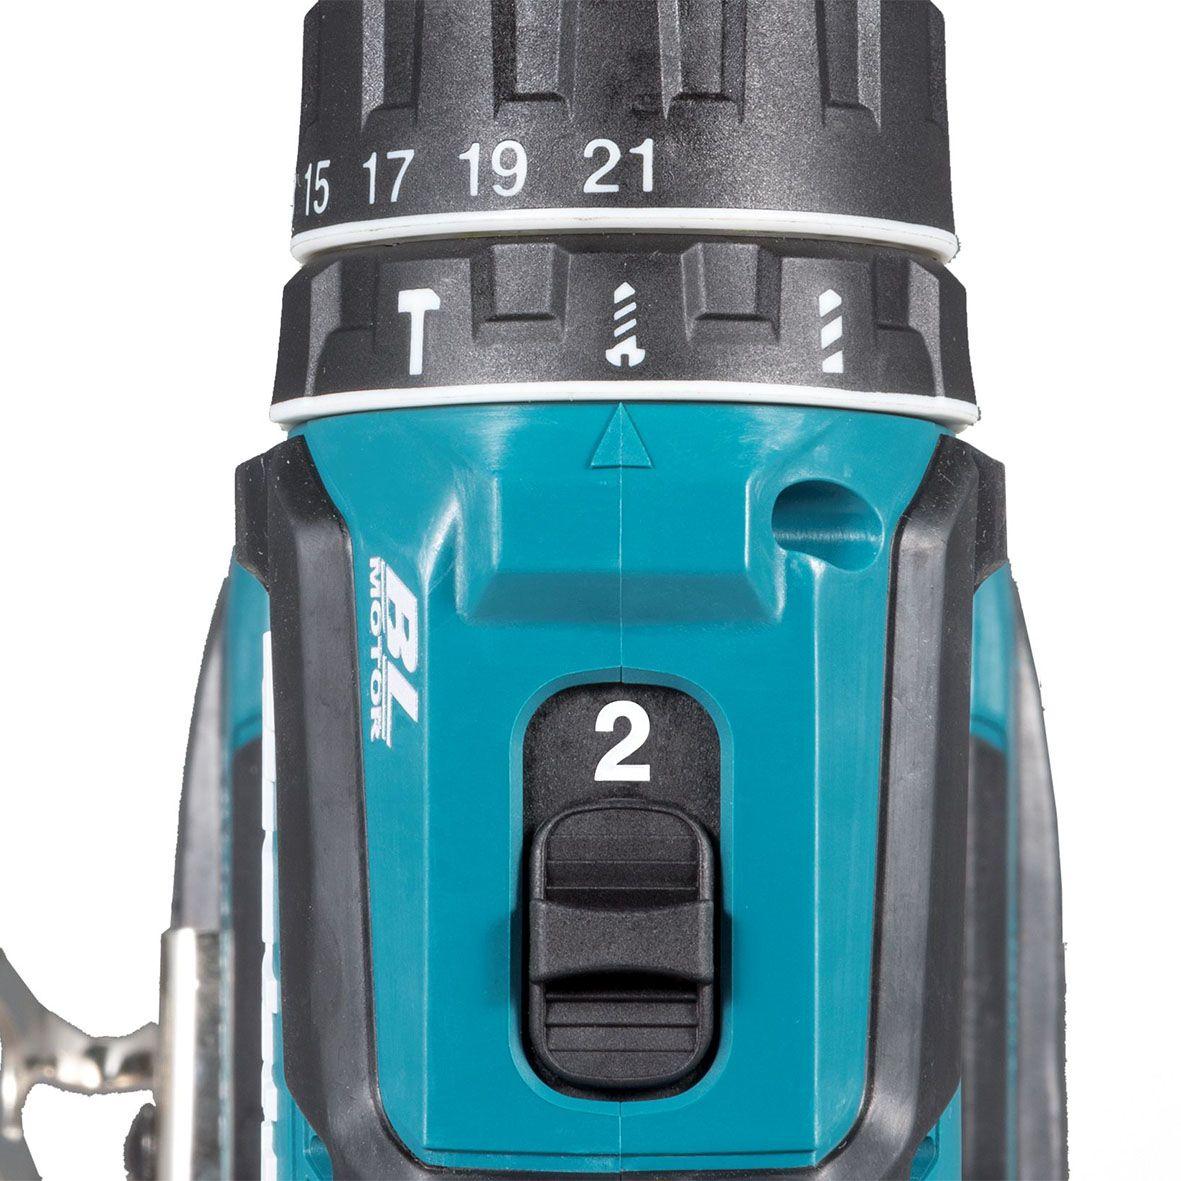 Makita DHP485Z drill Keyless 1.1 kg Black, Blue